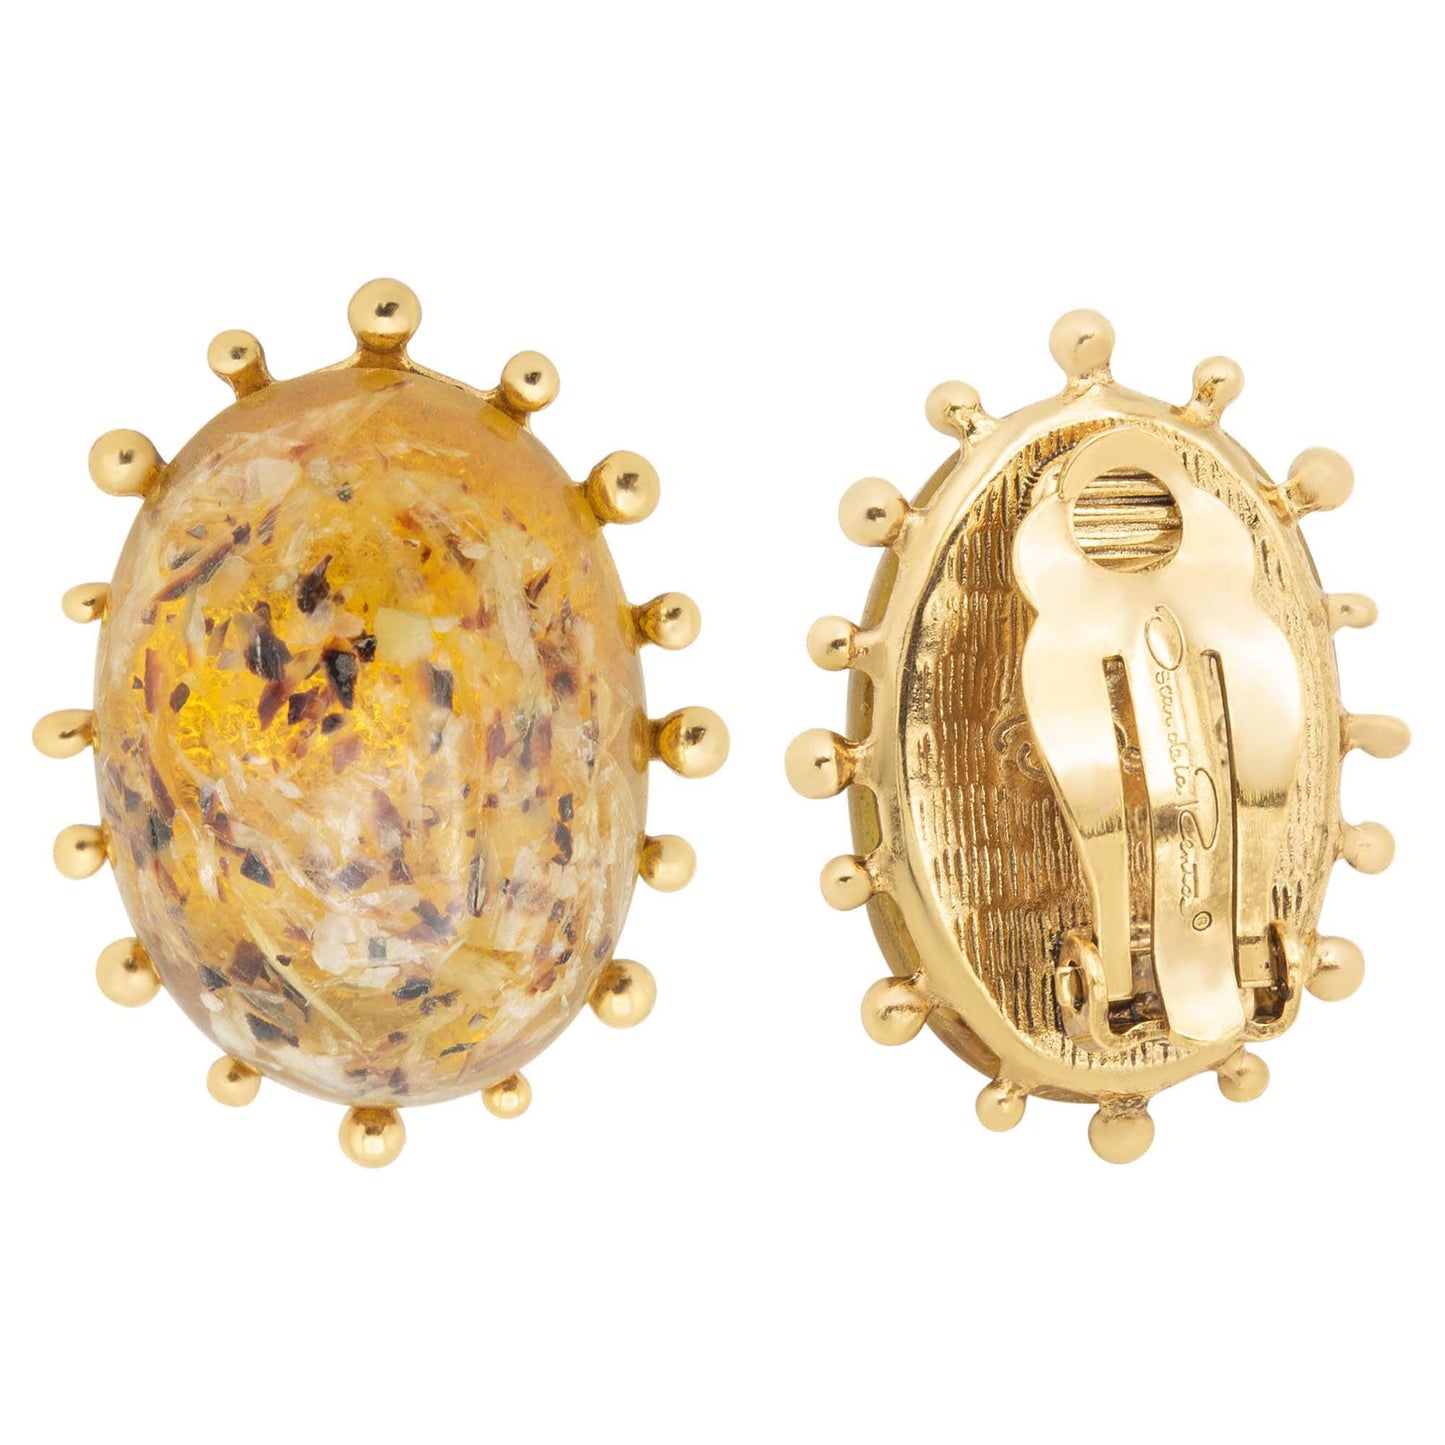 Vintage Women's Earrings Oscar de la Renta Gold Clip Earrings Oval Design 1" OSE-13491